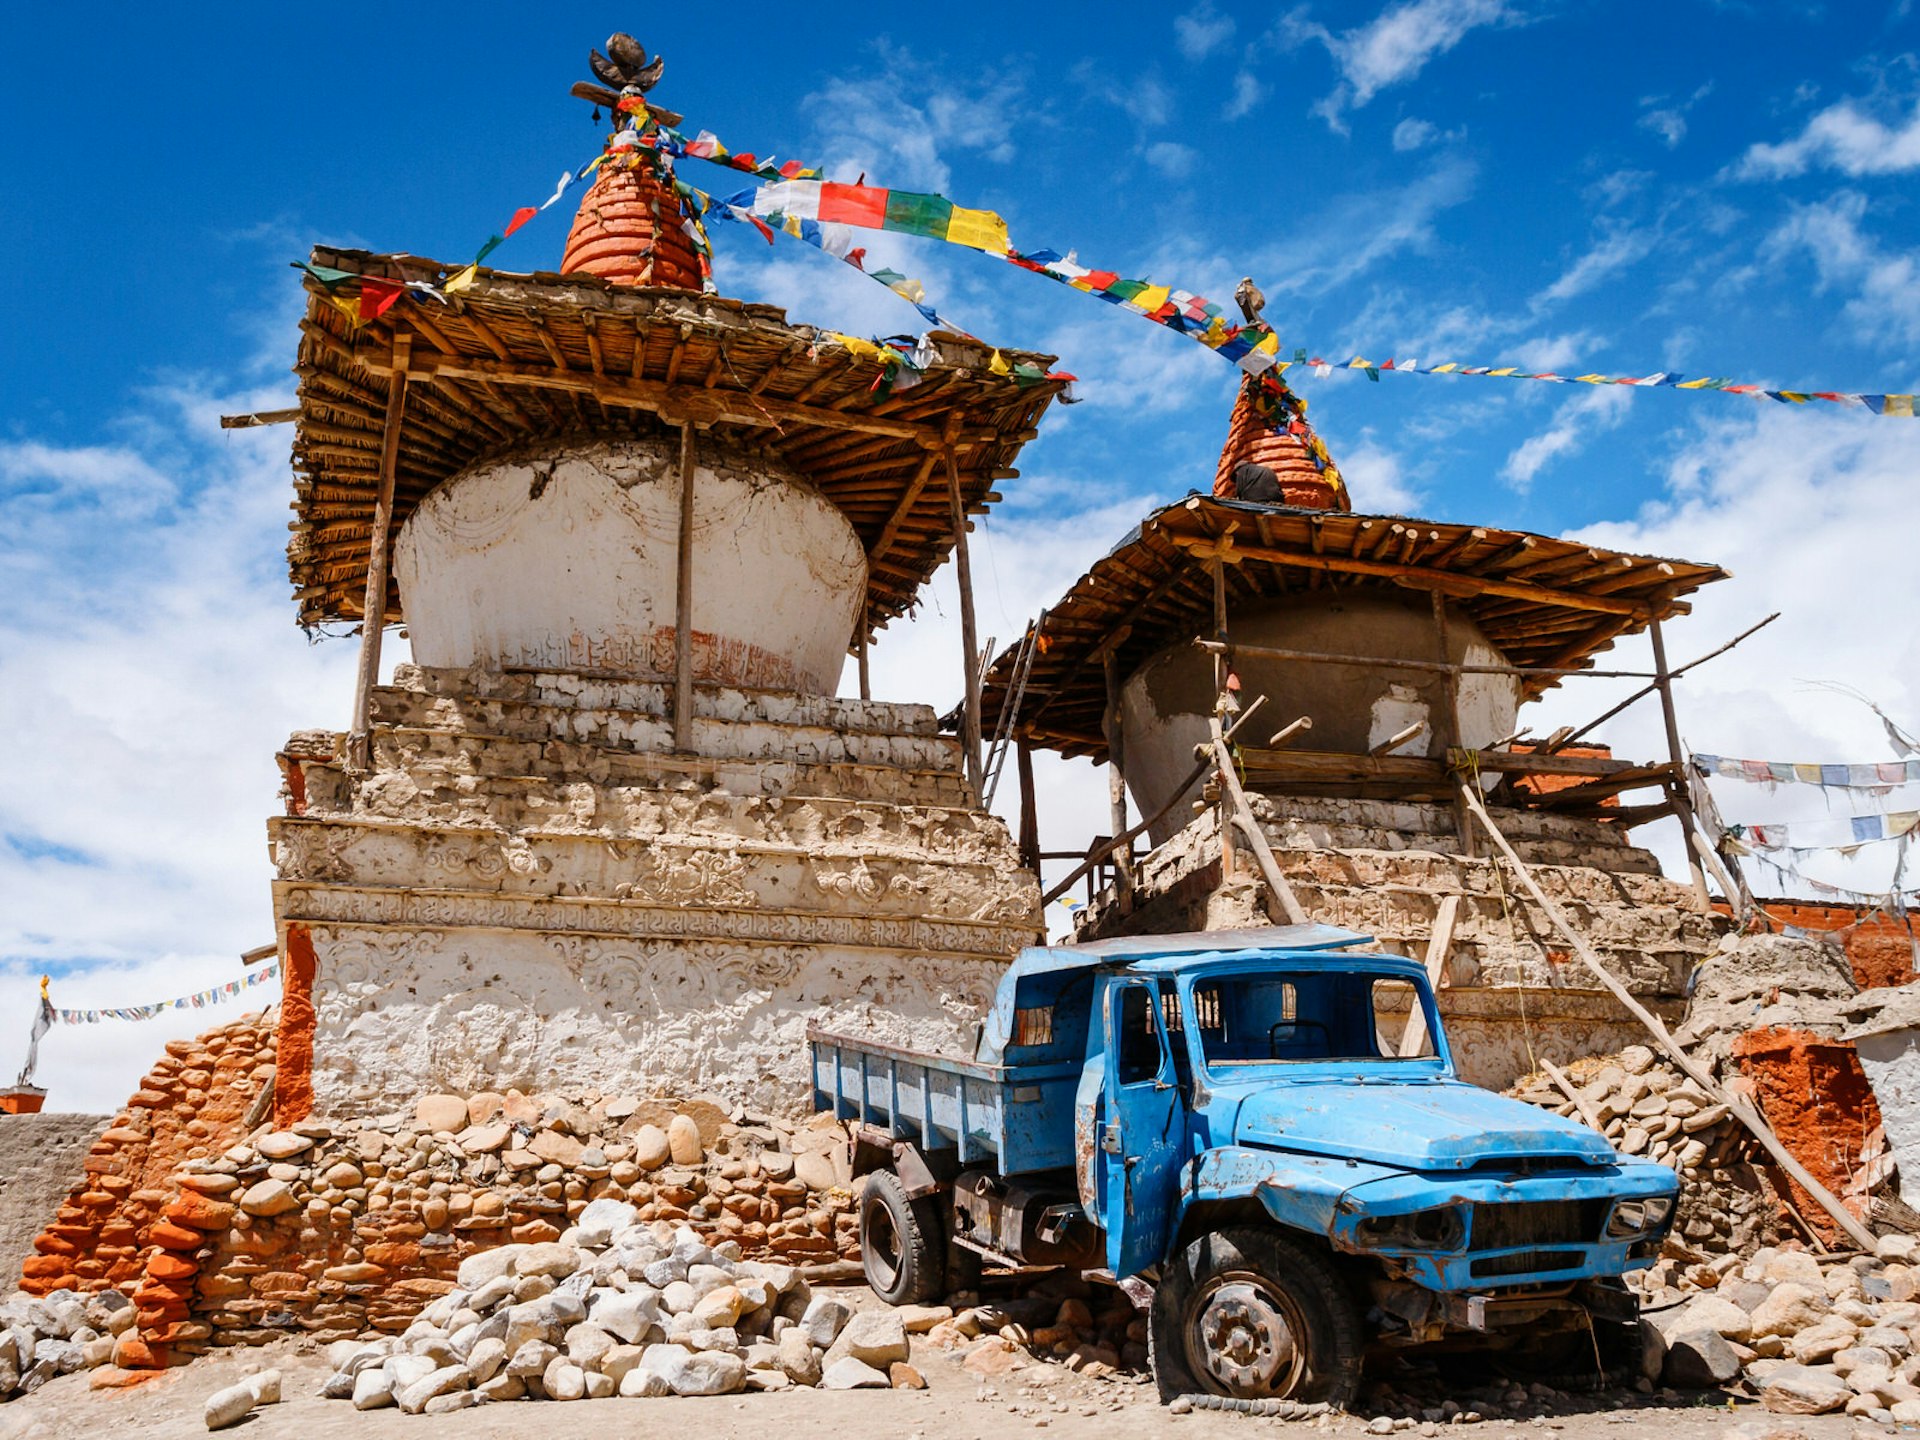 A truck abandoned under an ancient chorten in Mustang